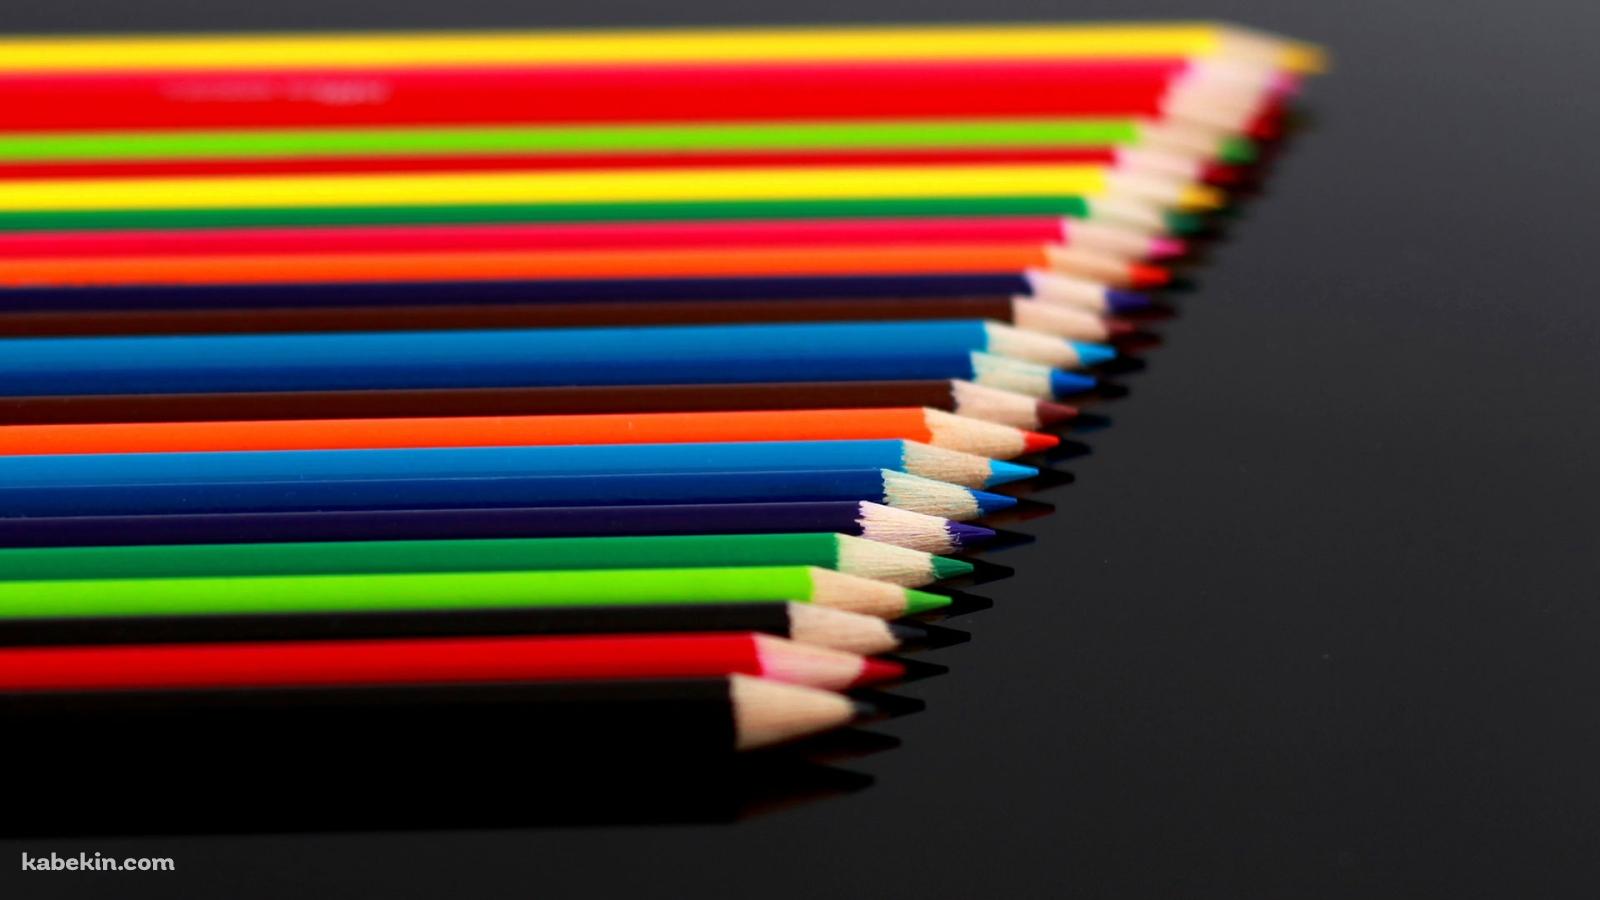 カラフルな色鉛筆の壁紙(1600px x 900px) 高画質 PC・デスクトップ用